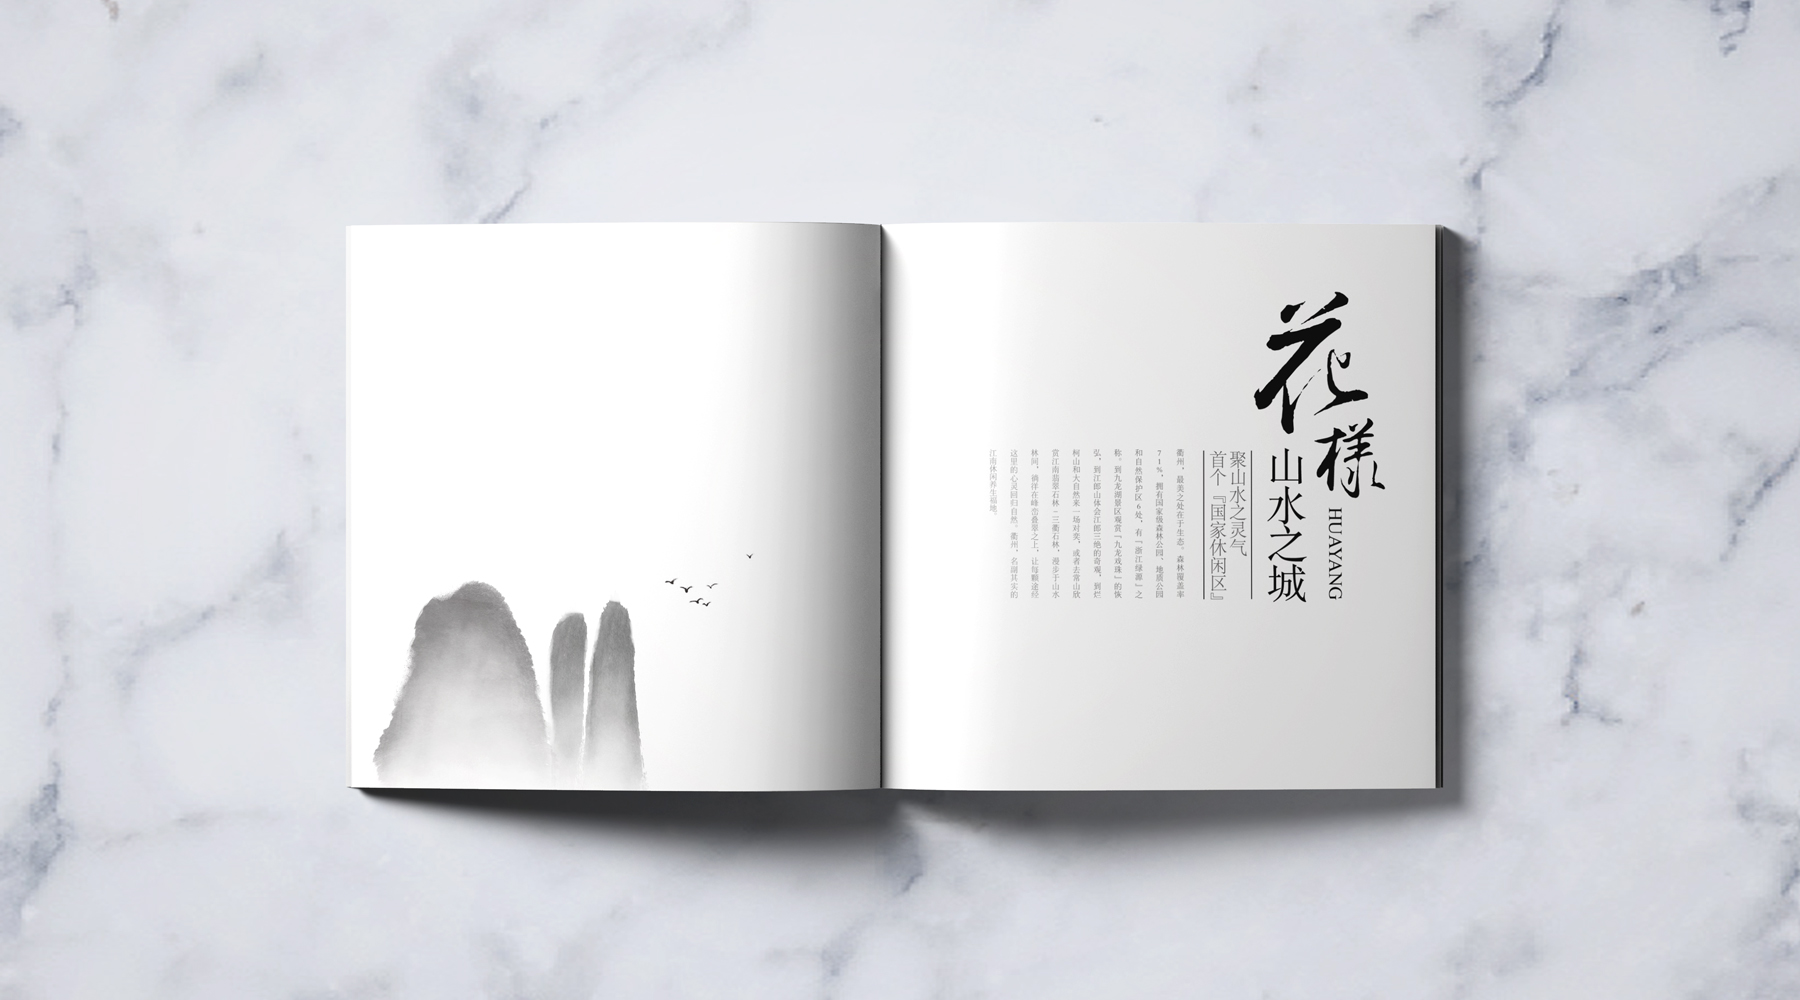 衢州城市画册,传统画册设计,新中式画册设计,衢州画册设计,杭州画册设计.jpg